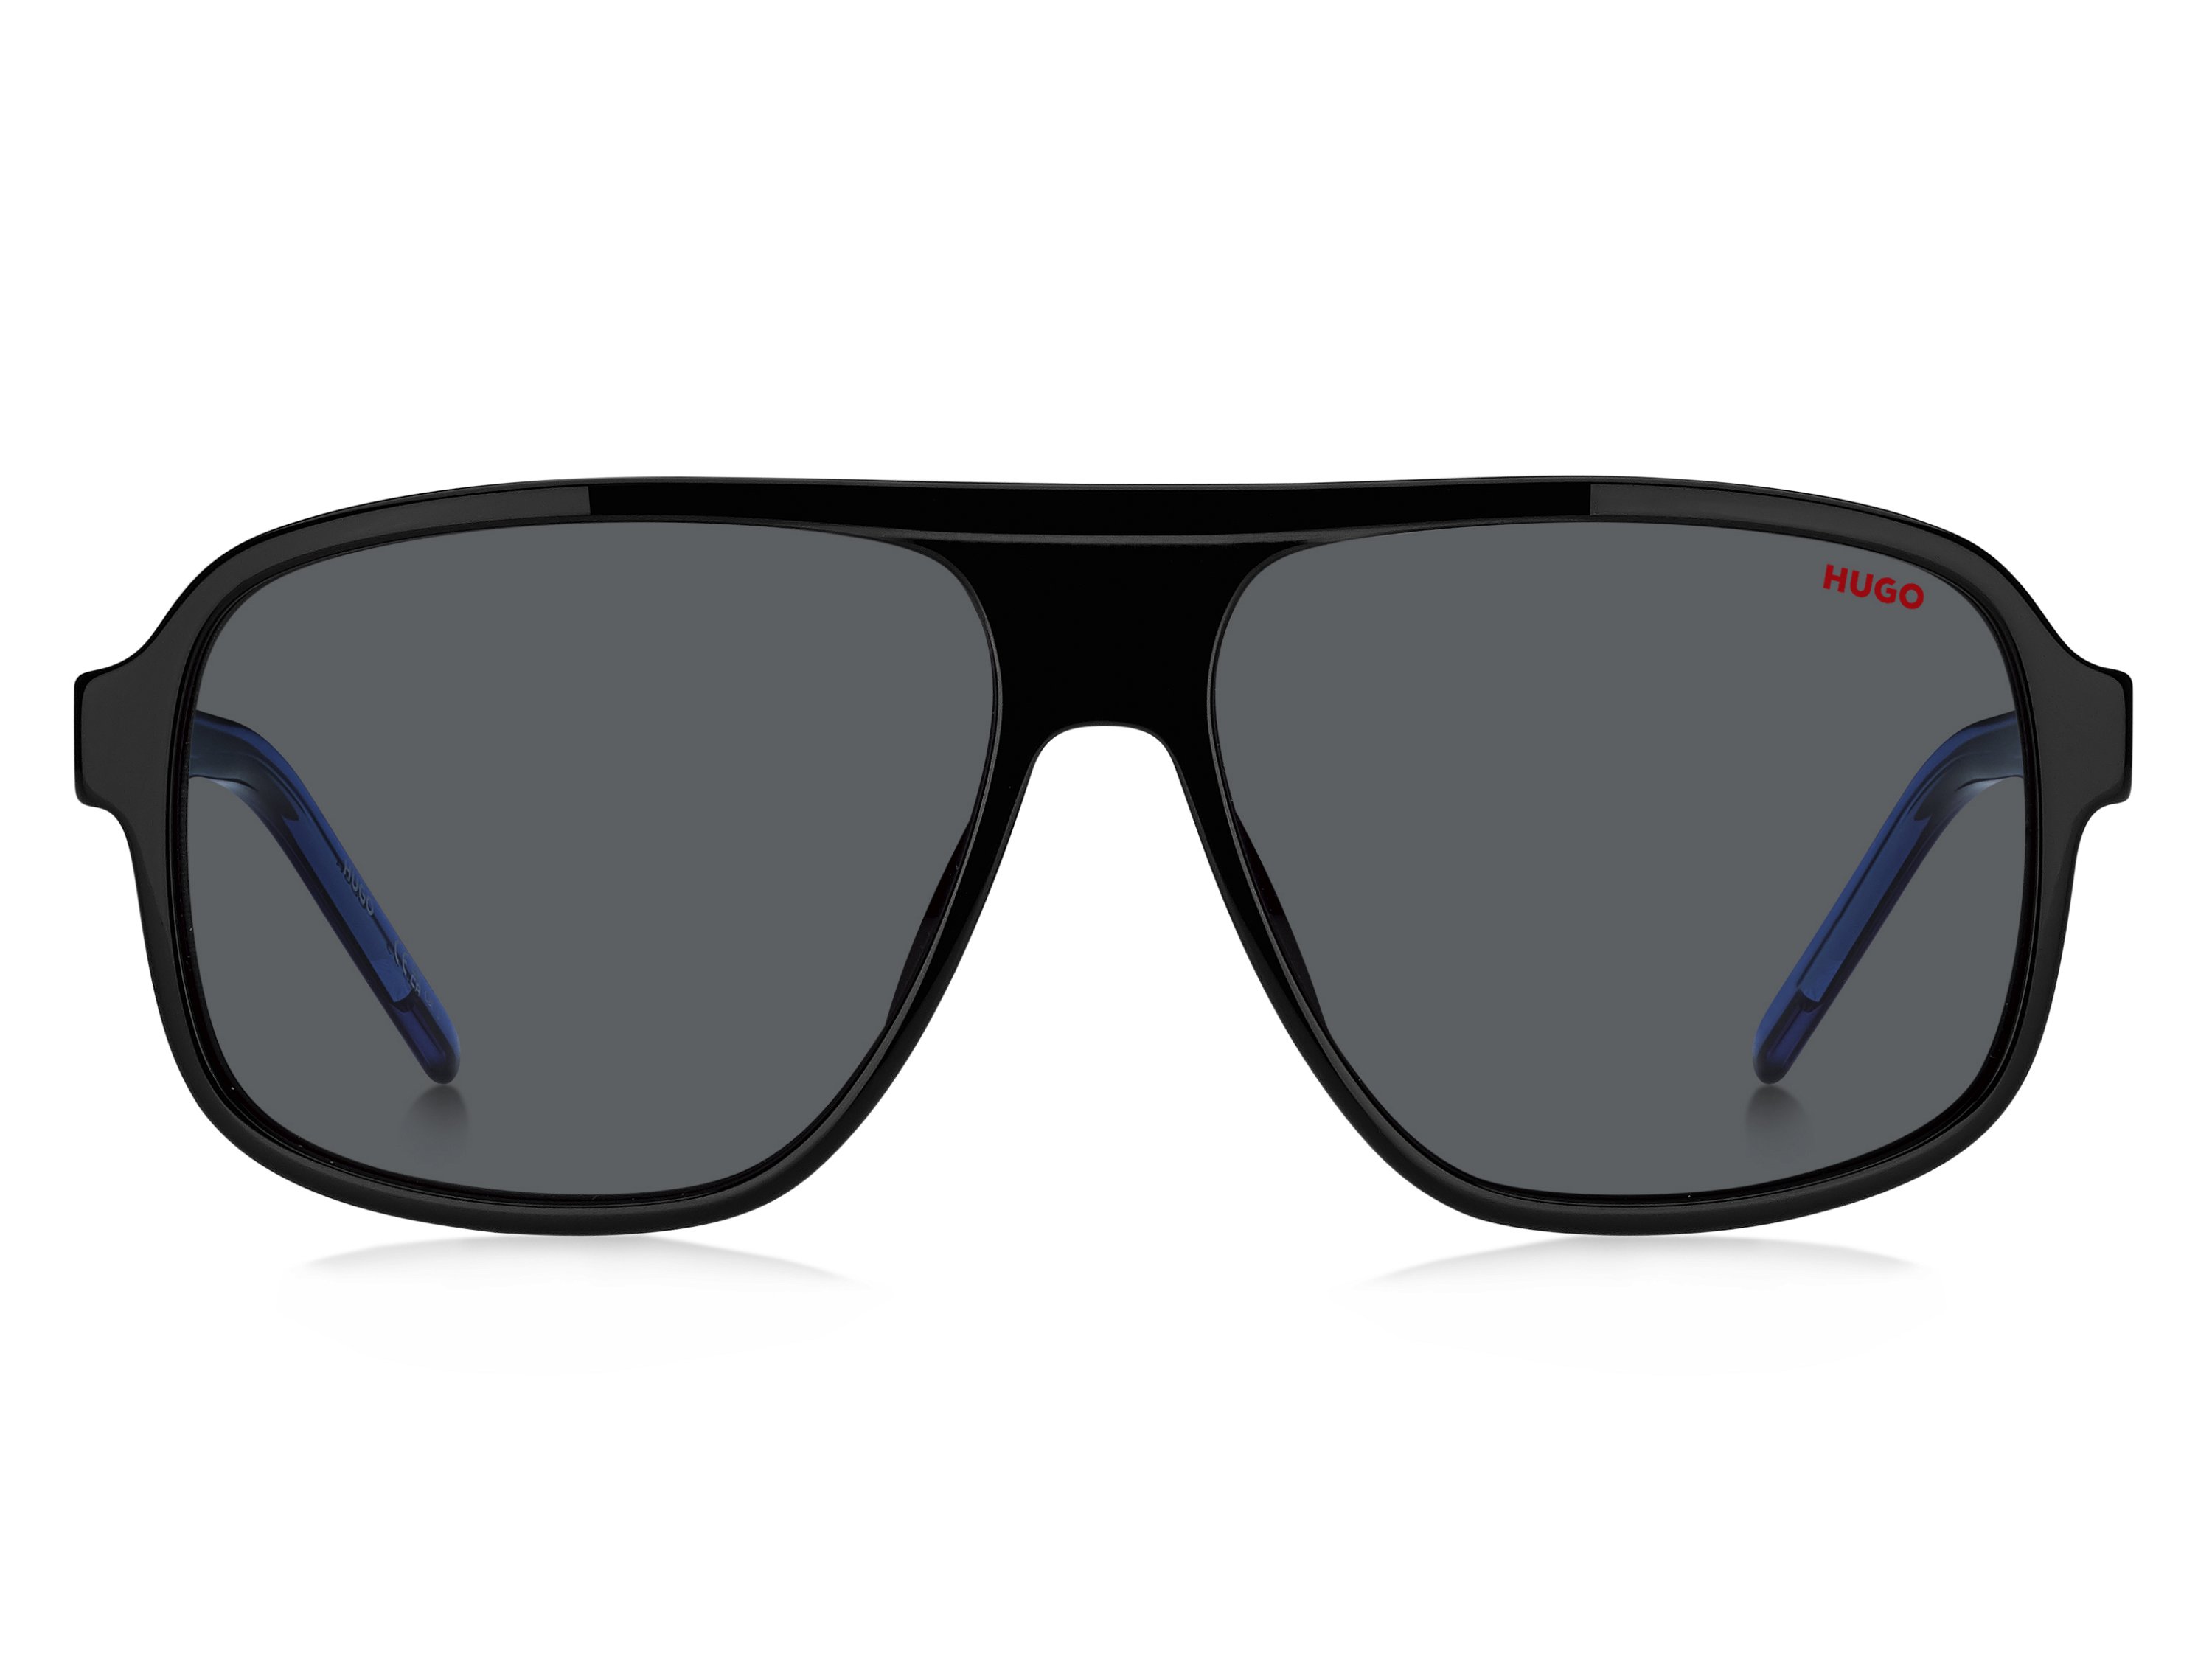 Das Bild zeigt die Sonnenbrille HG1296/S D51 von der Marke Hugo in blau/schwarz.